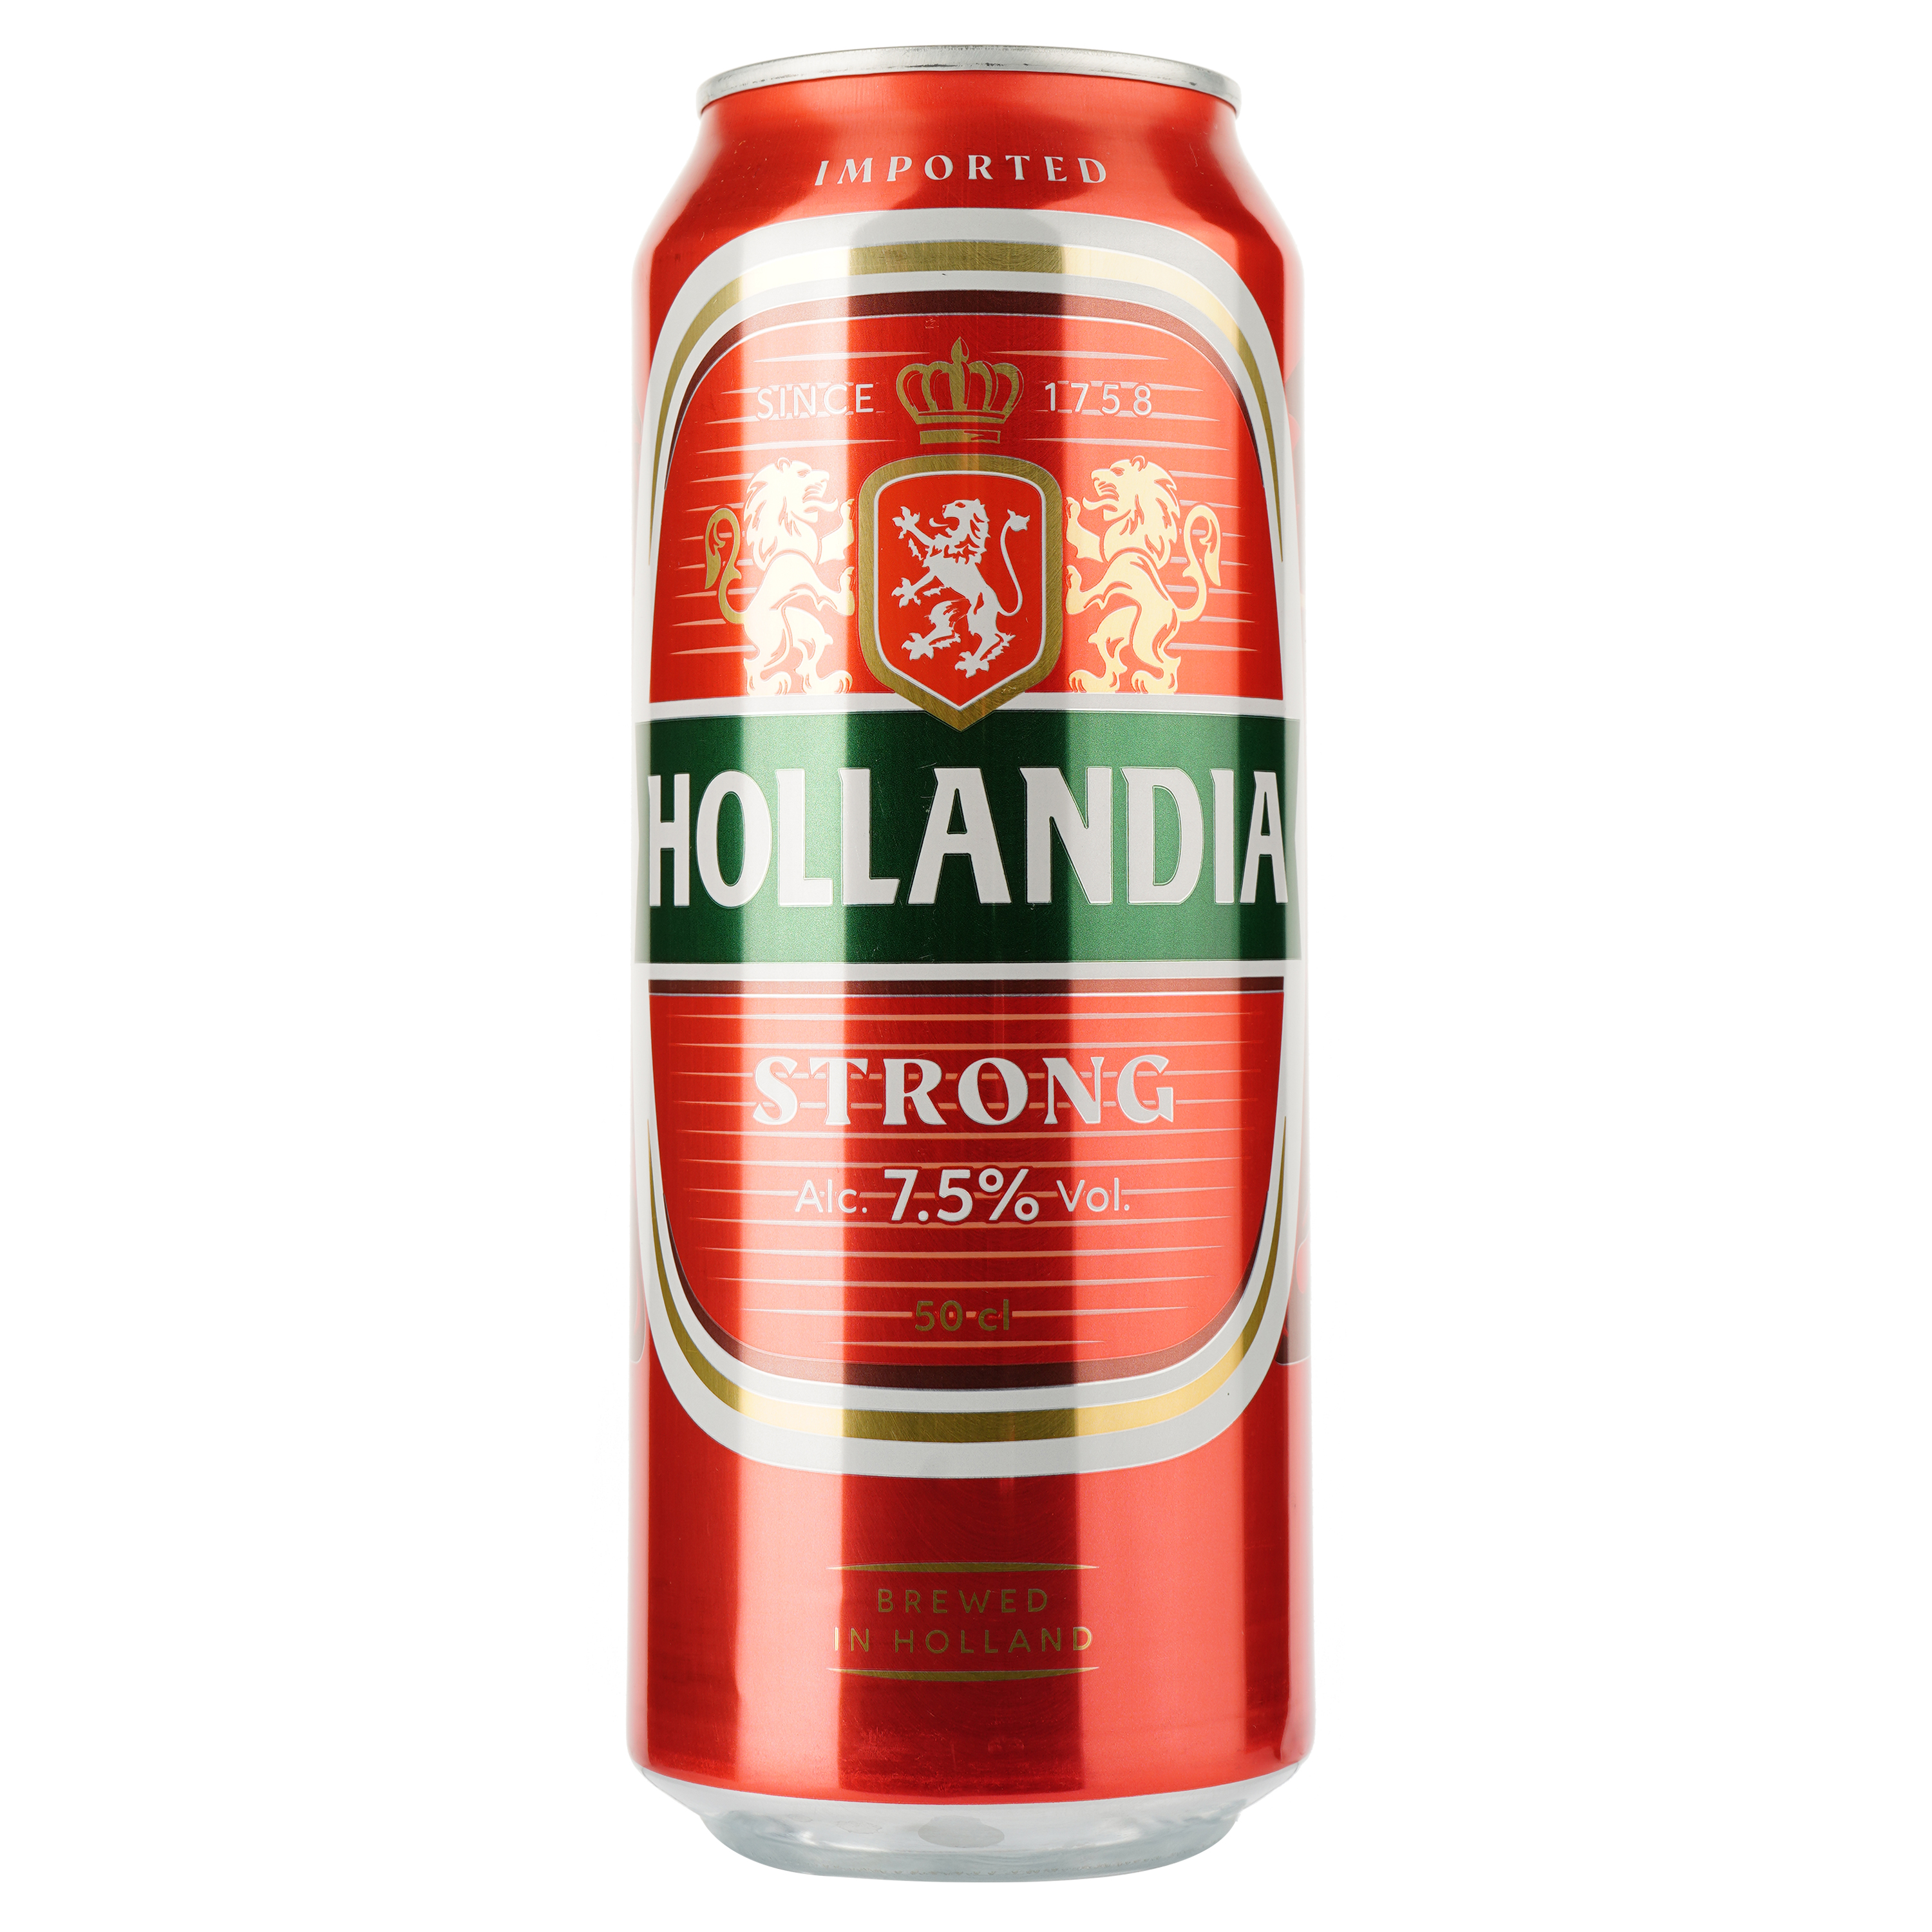 Пиво Hollandia Strong, светлое, фильтрованное, 7,5%, ж/б, 0,5 л - фото 1